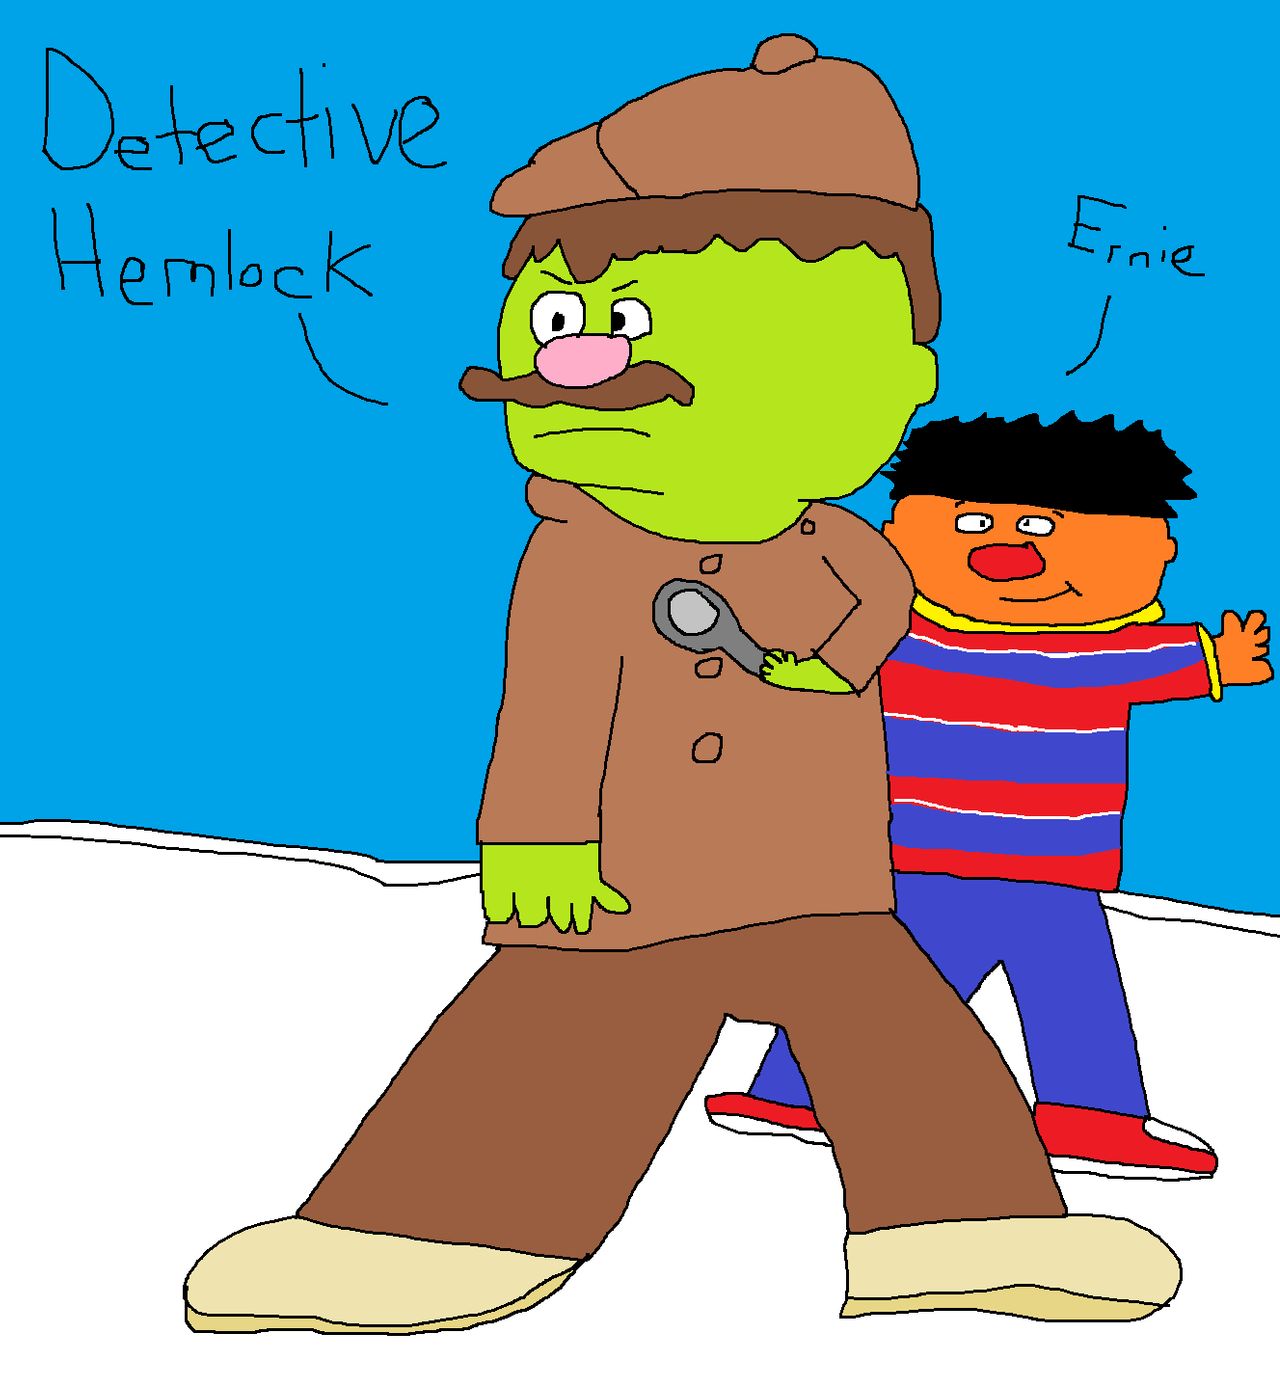 Detective Hemlock and Ernie by Dariusman143